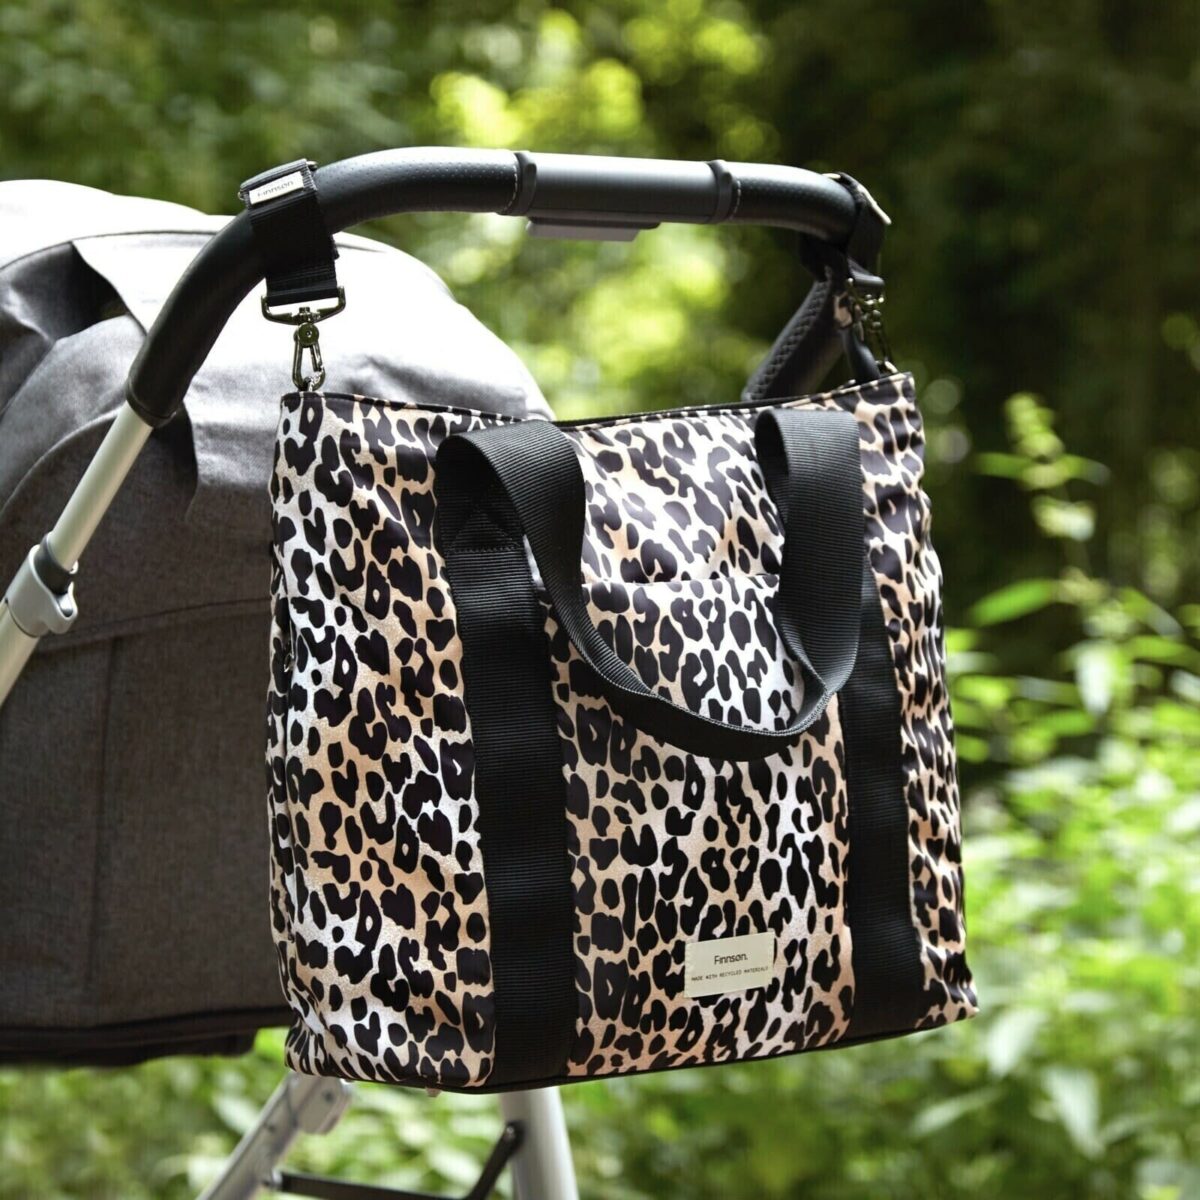 Finnson Leopard Changing Bag